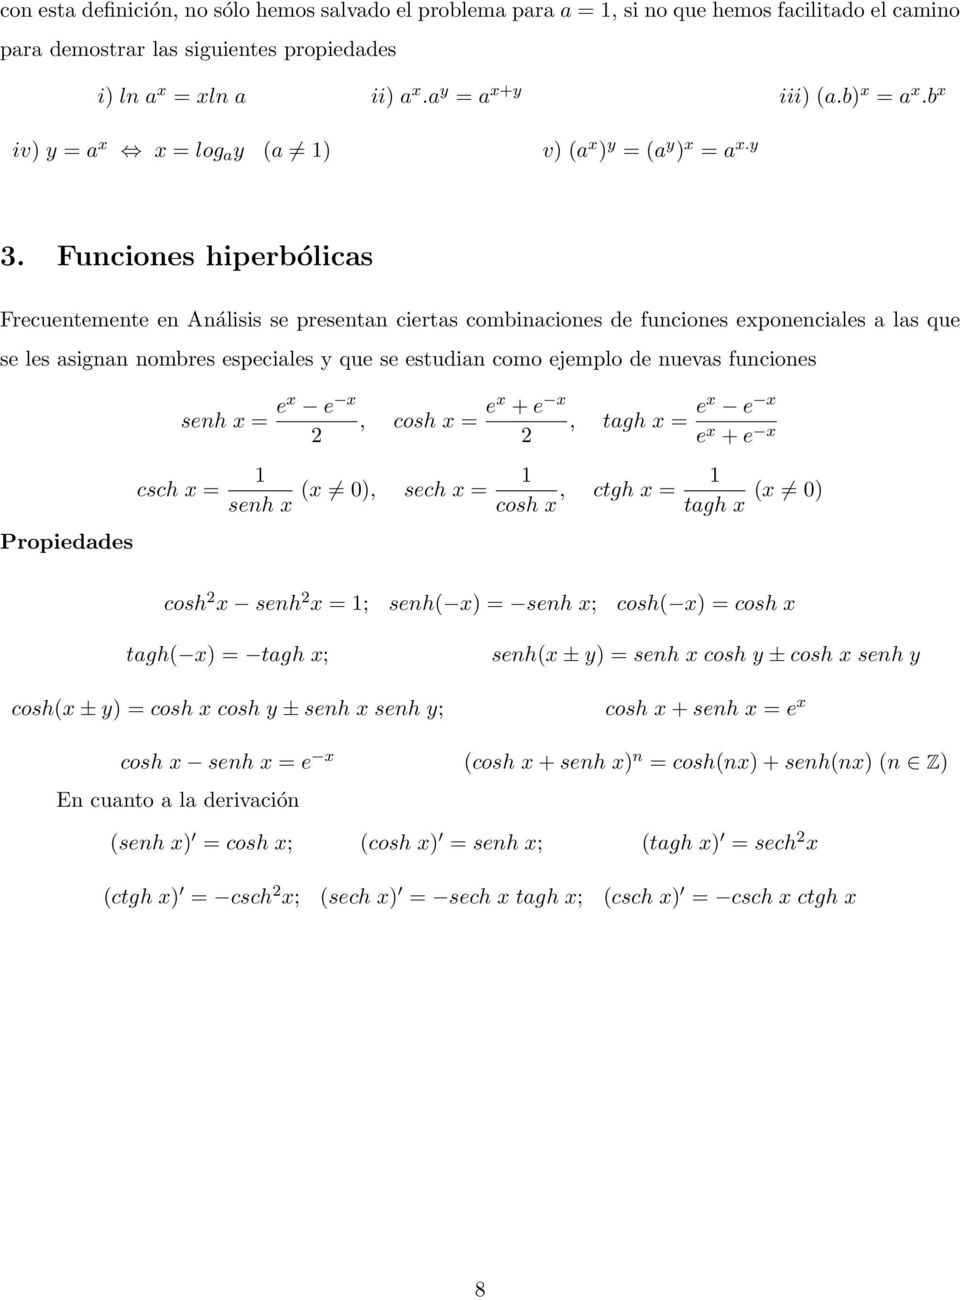 Funciones hiperbólicas Frecuenemene en Análisis se presenan cieras combinaciones de funciones exponenciales a las que se les asignan nombres especiales y que se esudian como ejemplo de nuevas